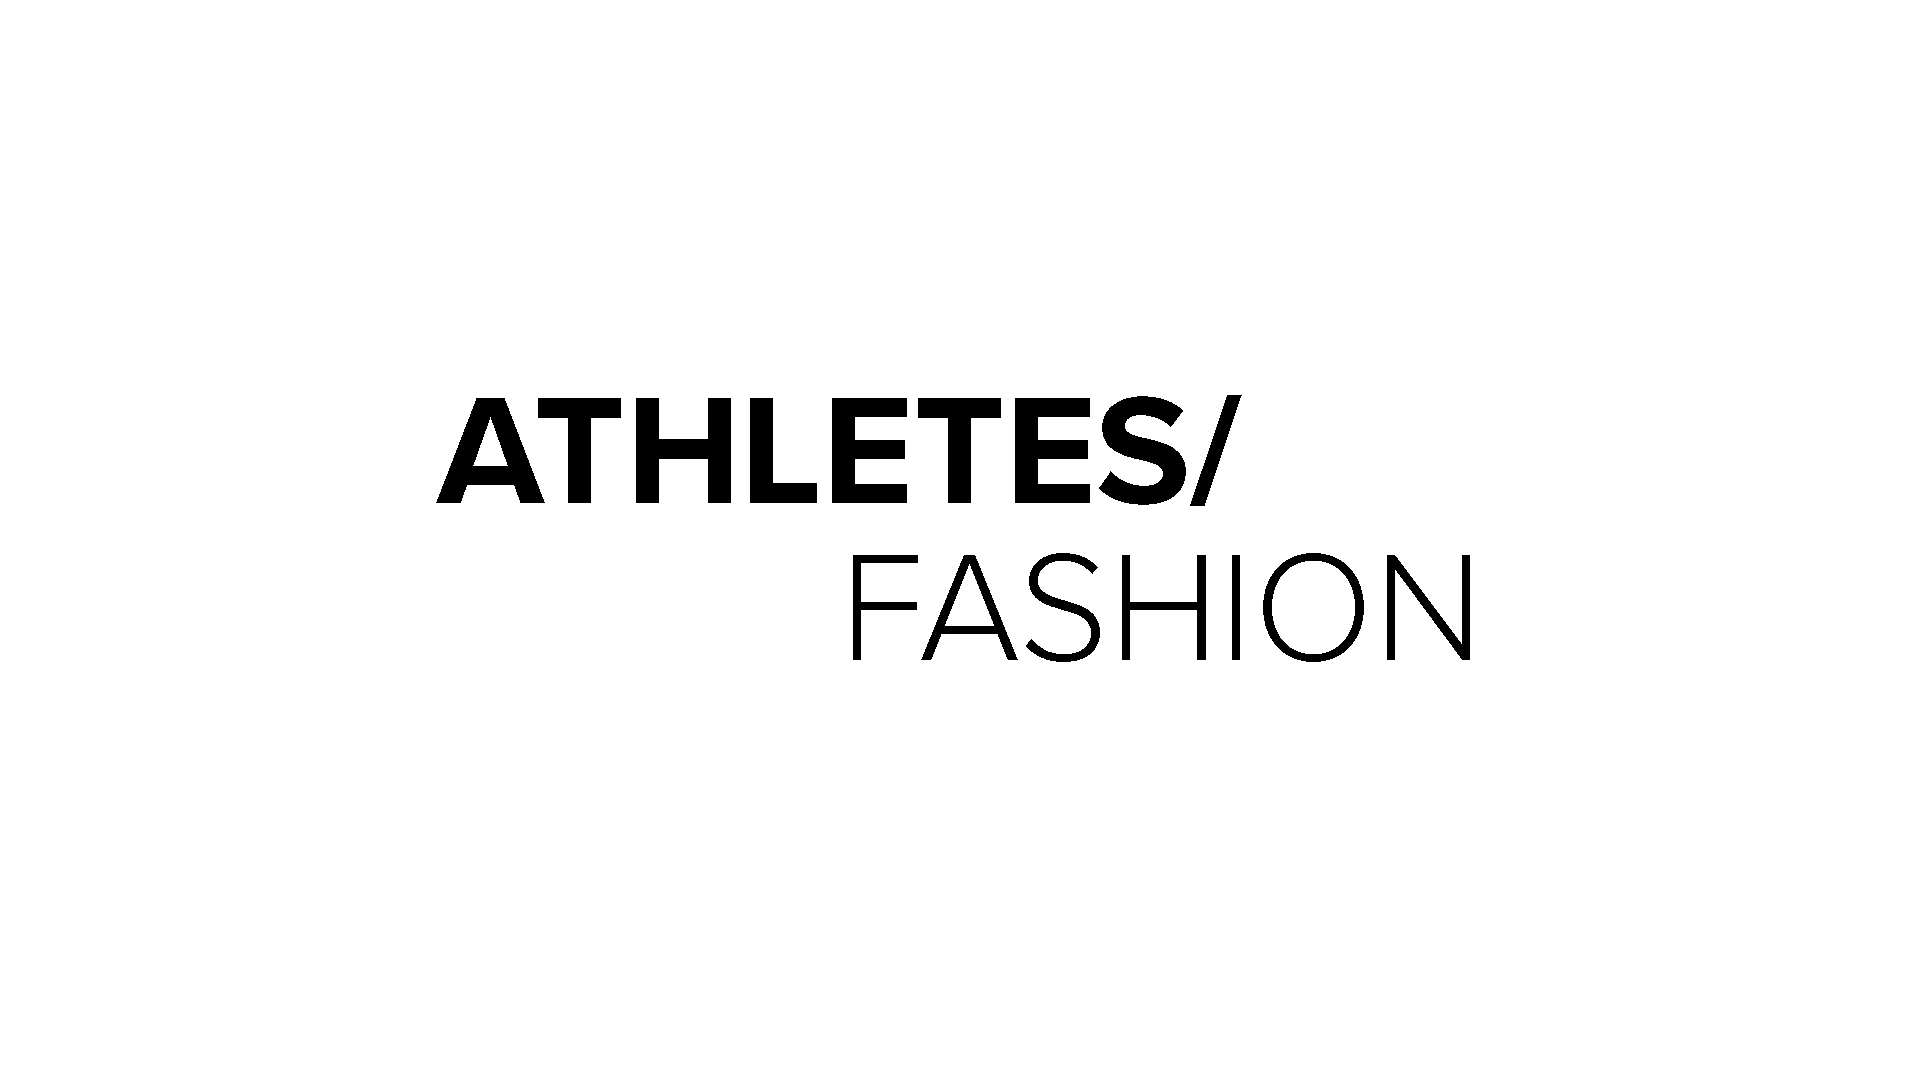 Athletes and Fashion